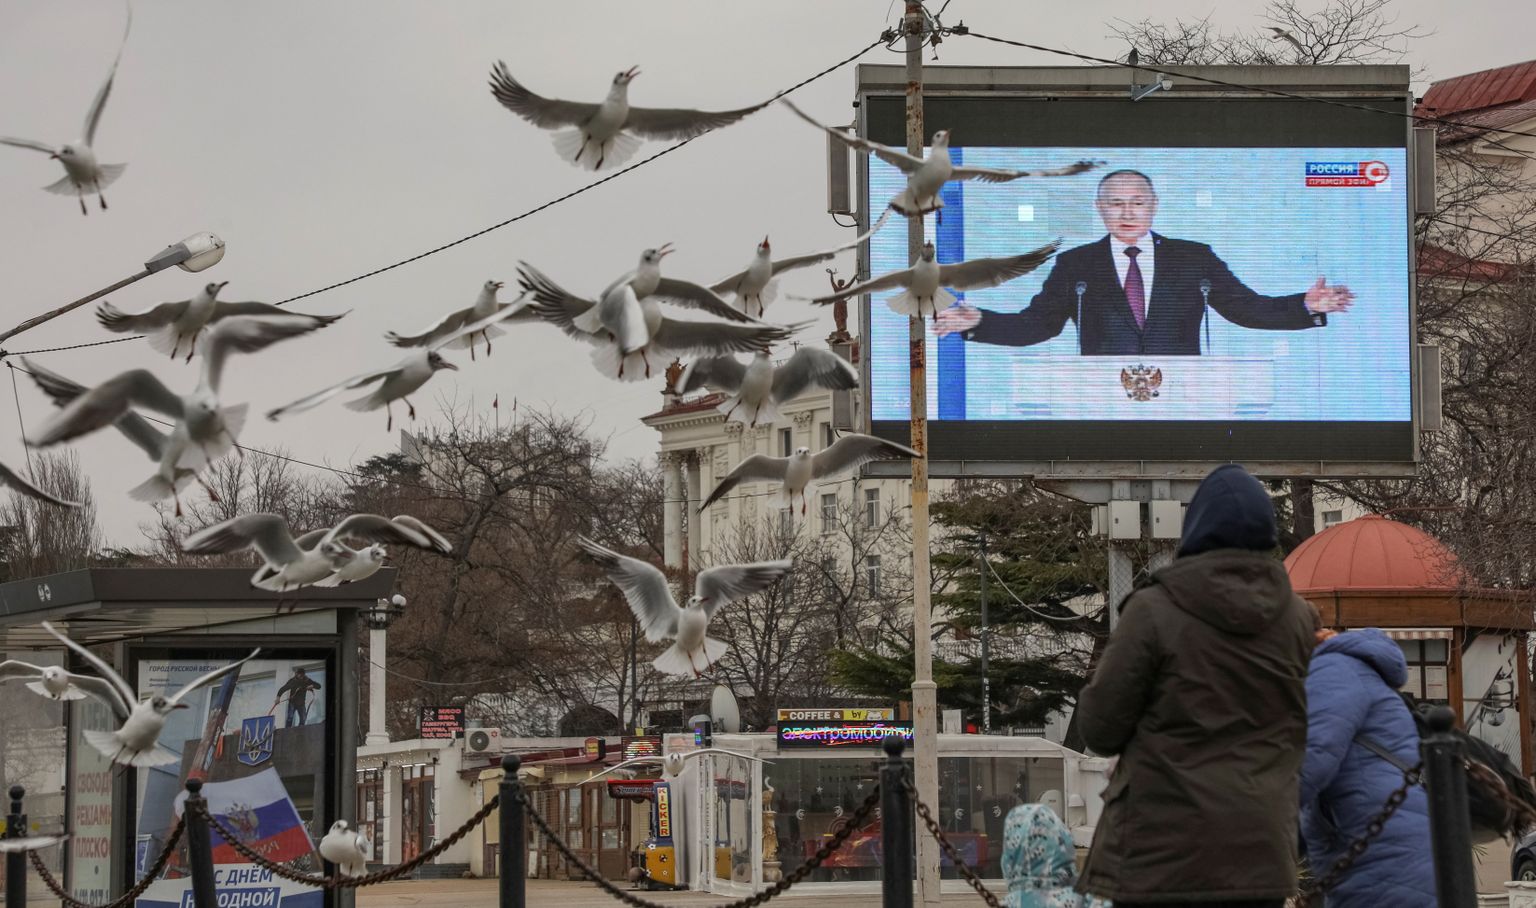 Vladimir Putin ekraanil aastakõne ajal Sevastopolis. REUTERS/Alexey Pavlishak